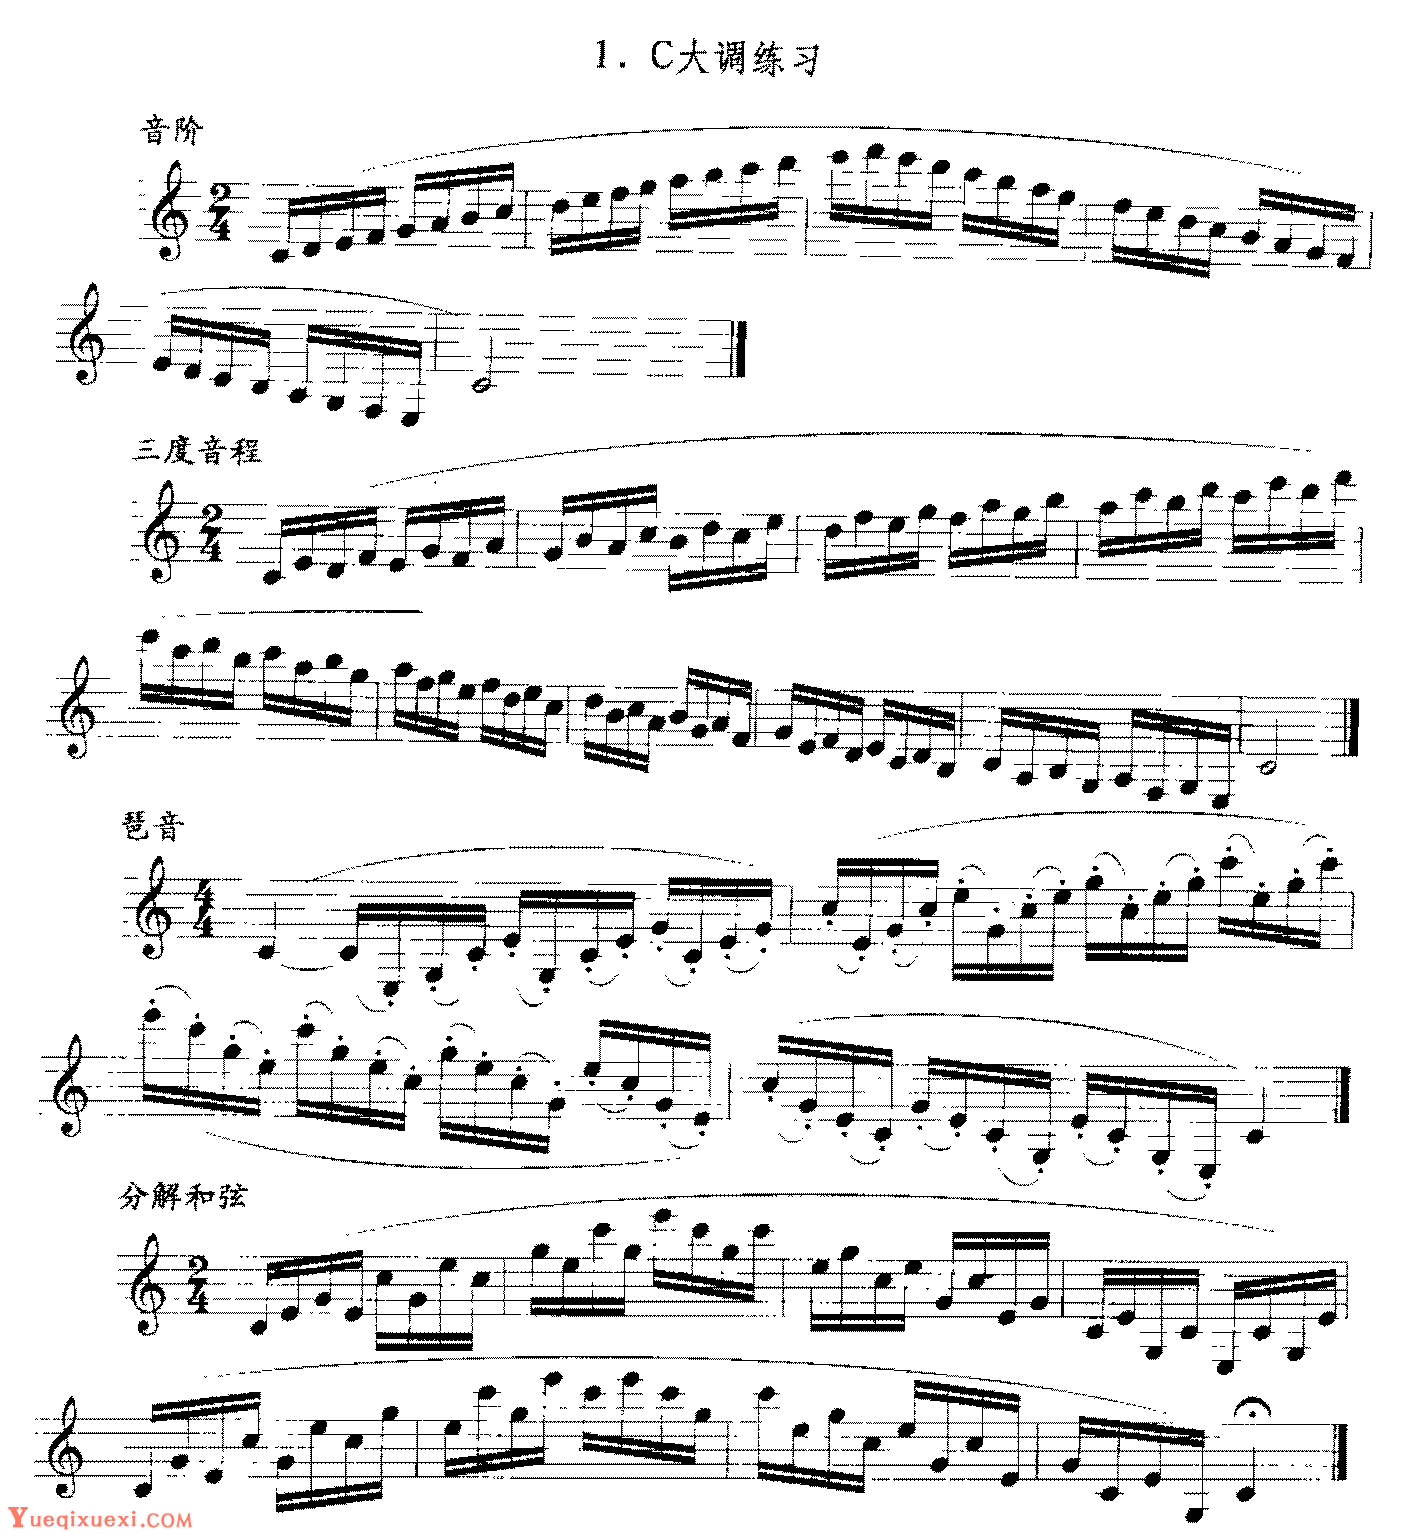 单簧管日常基础技术练习曲《C大调练习》